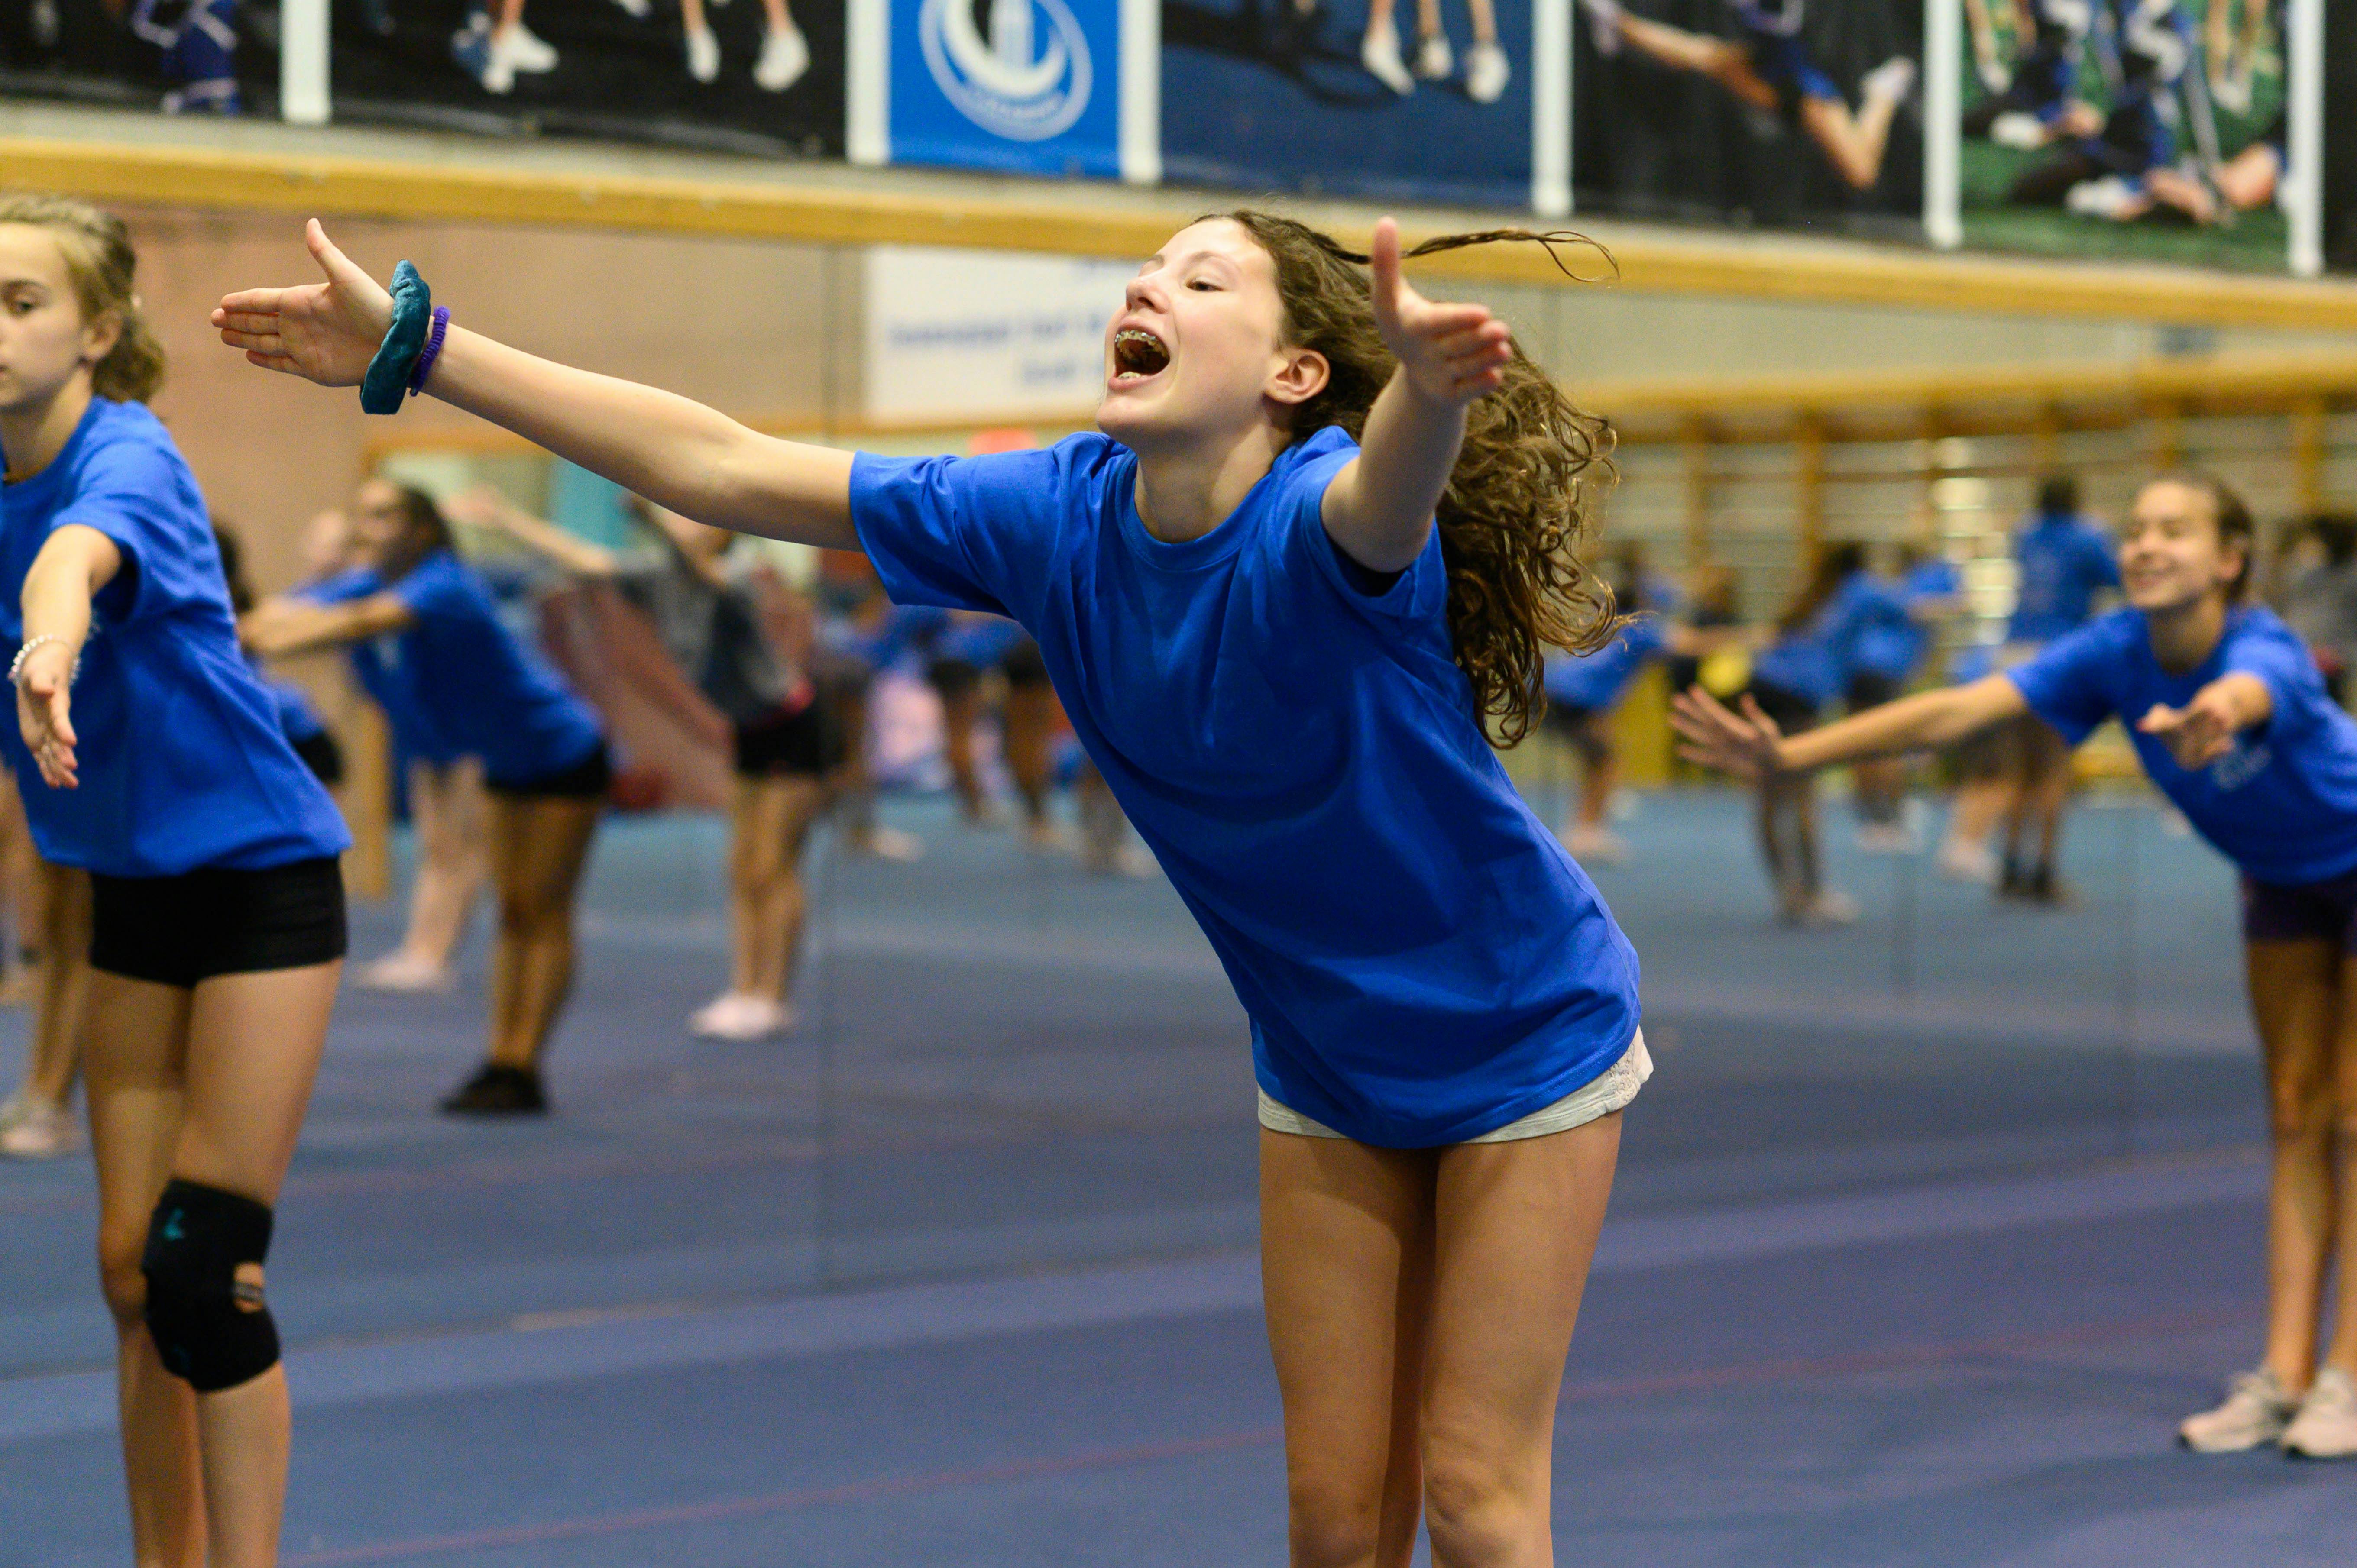 Cheerleading 12 à 16 ans | Activités jeunesse CEPSUM